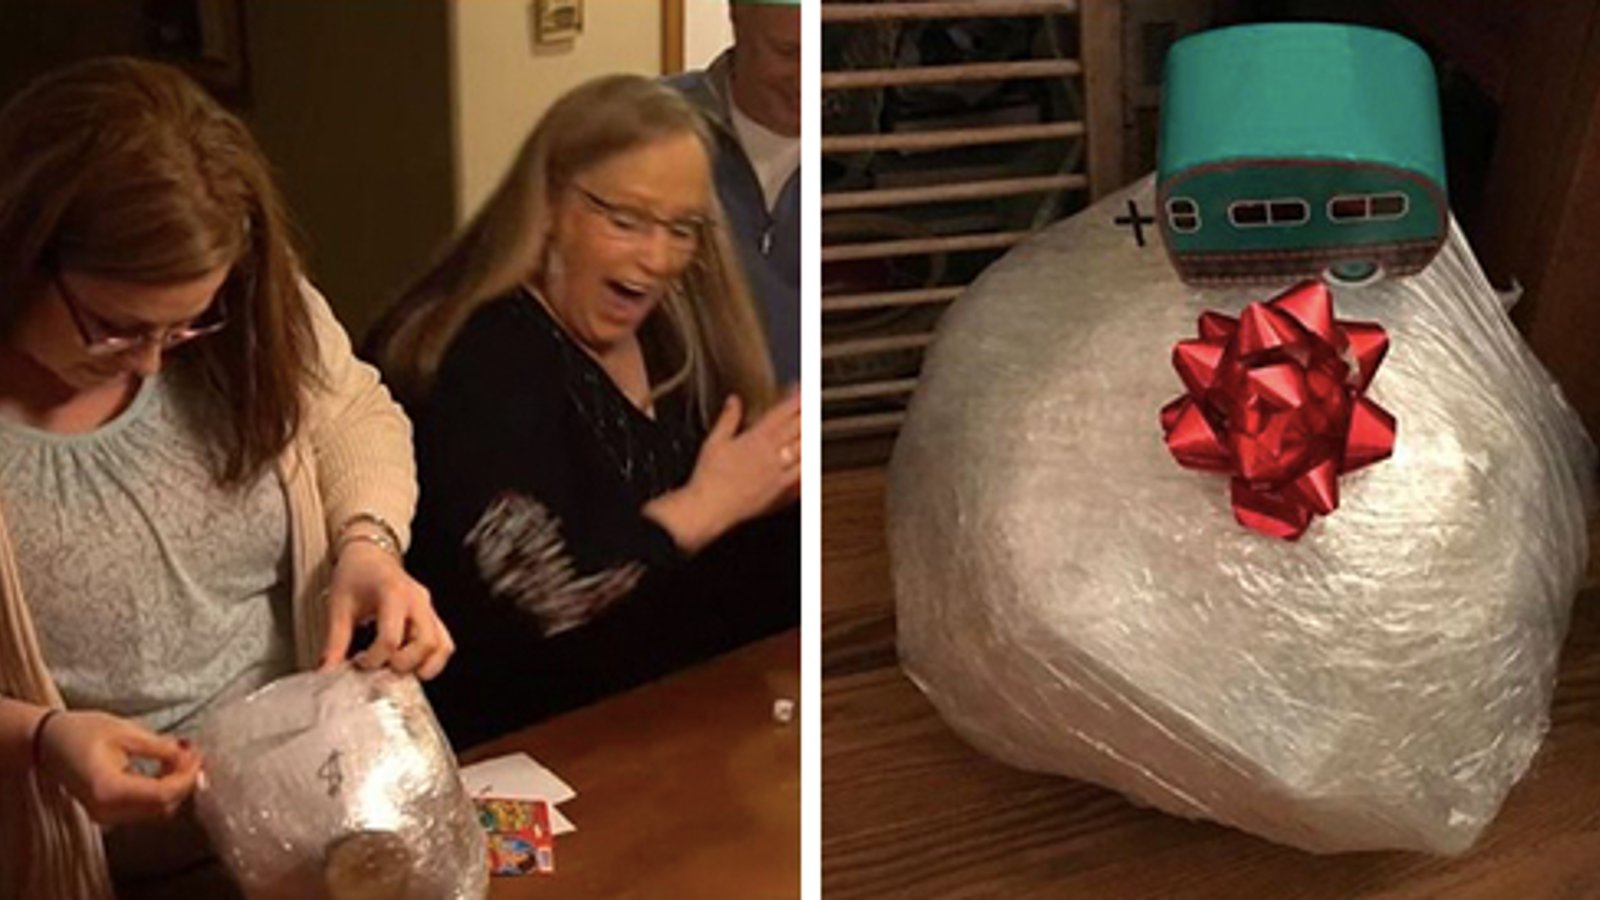 La boule de Noël emballée! Voici le jeu qui fera fureur cette année dans votre famille! 